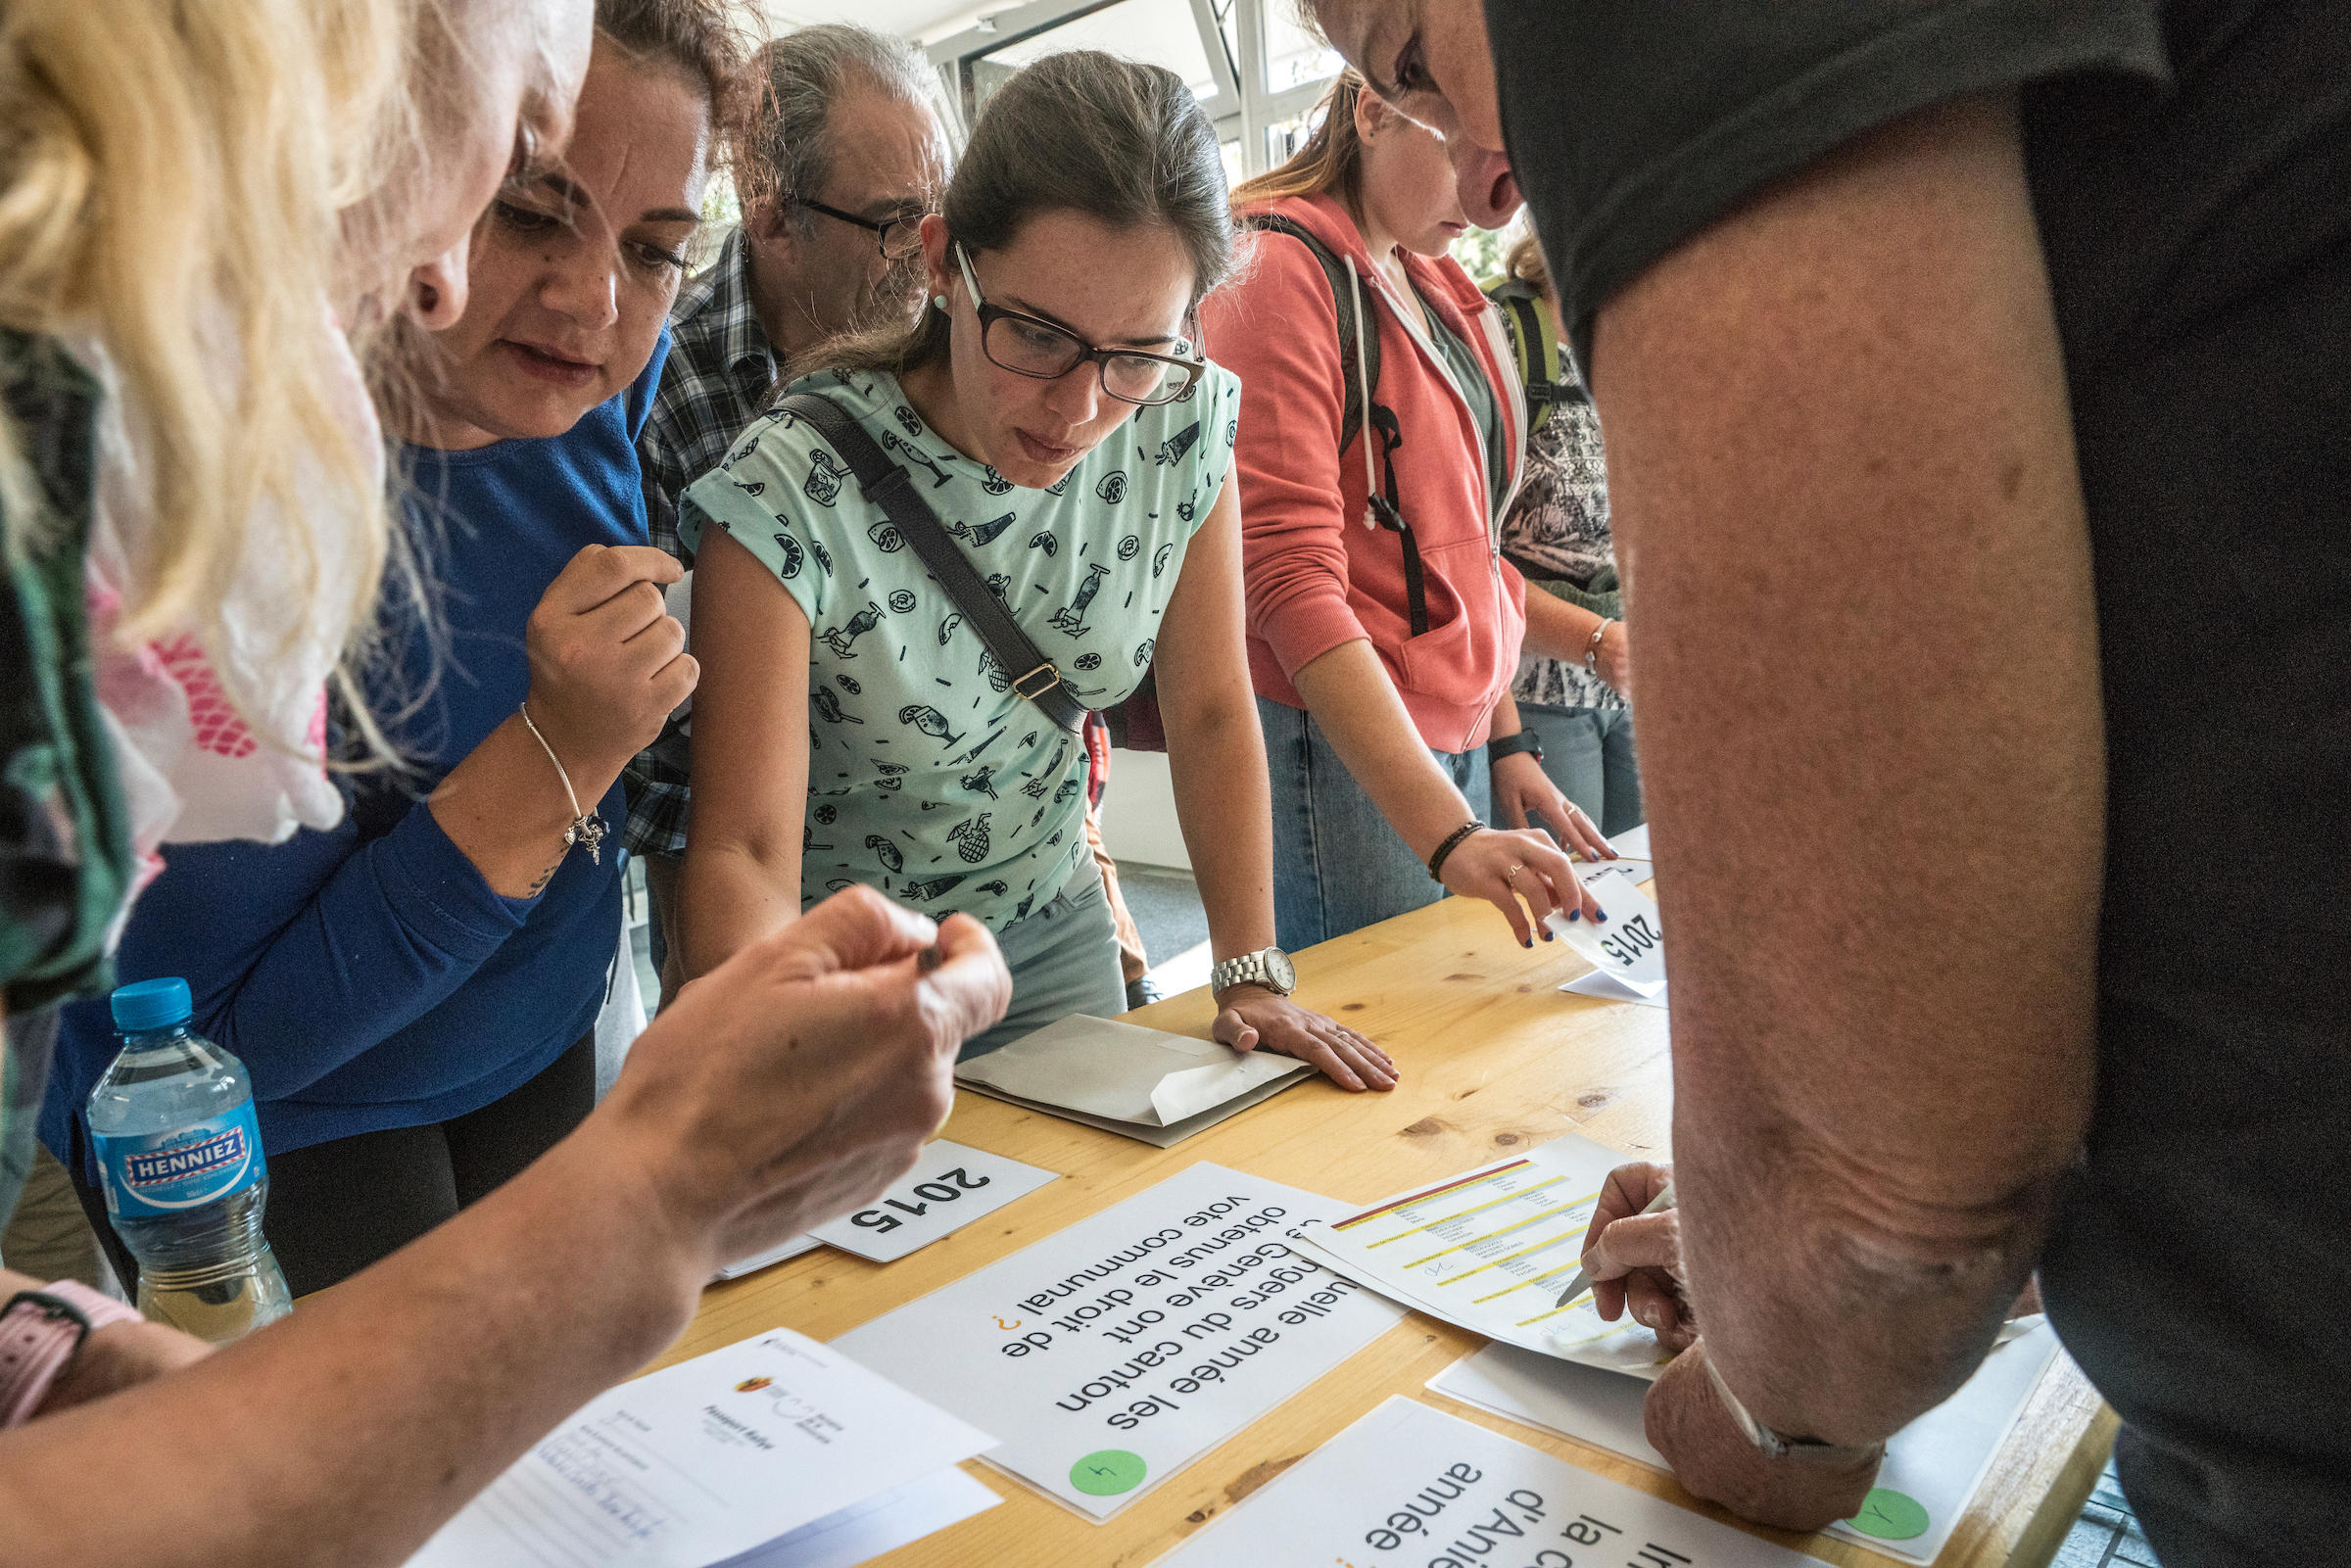 مجموعة من الناس يقفون حول طاولة في أحد مراكز الإقتراع من أجل البحث عن الكنز